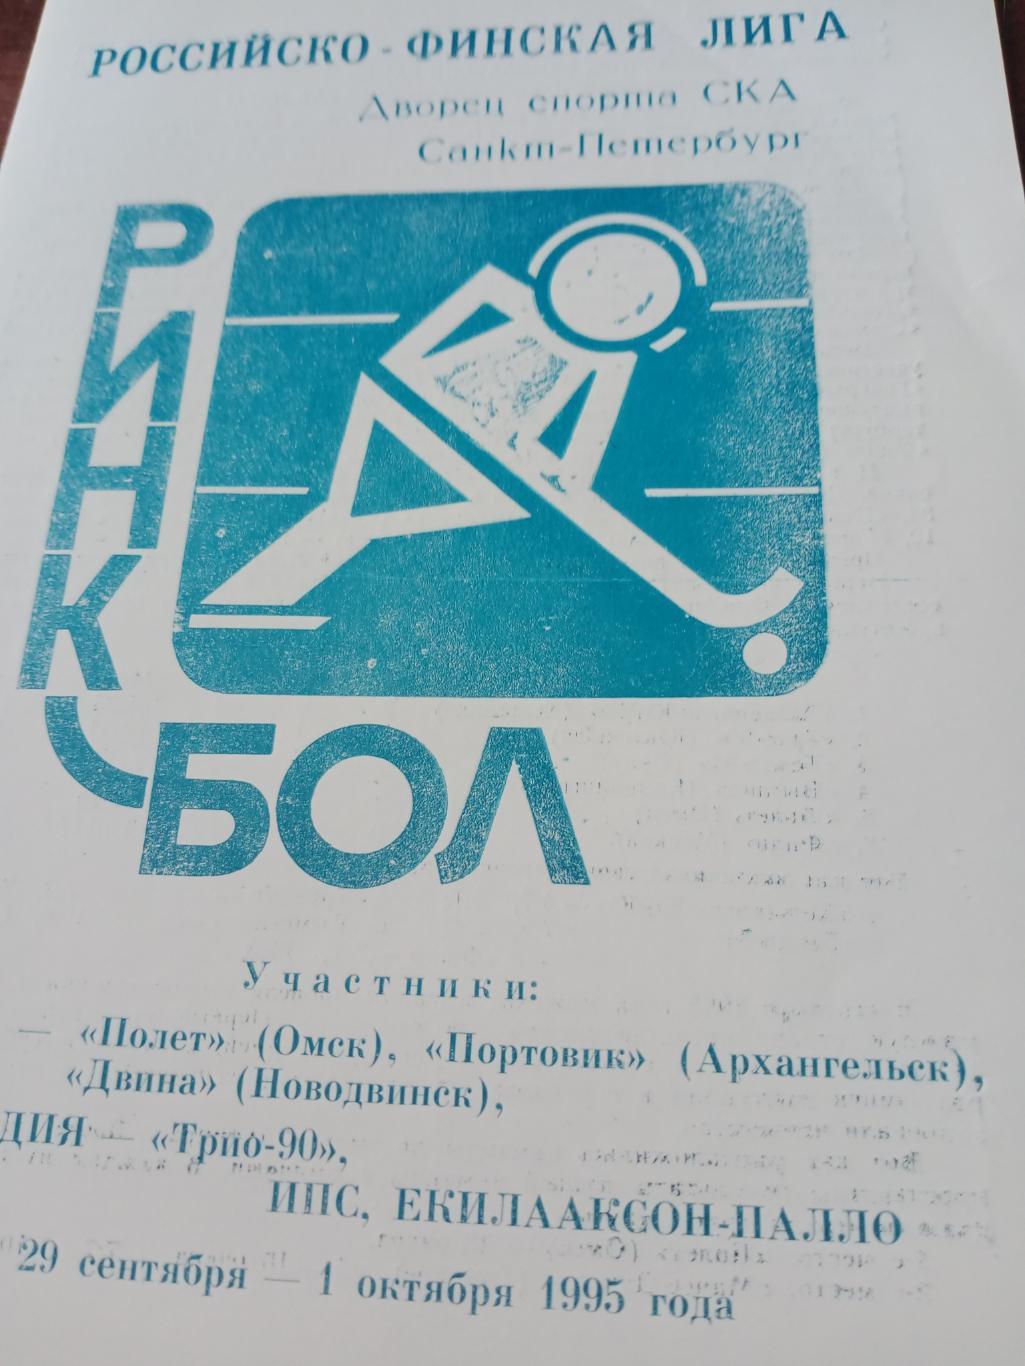 Ринкбол. Российско-Финская лига. Санкт-Петербург, 1995 год